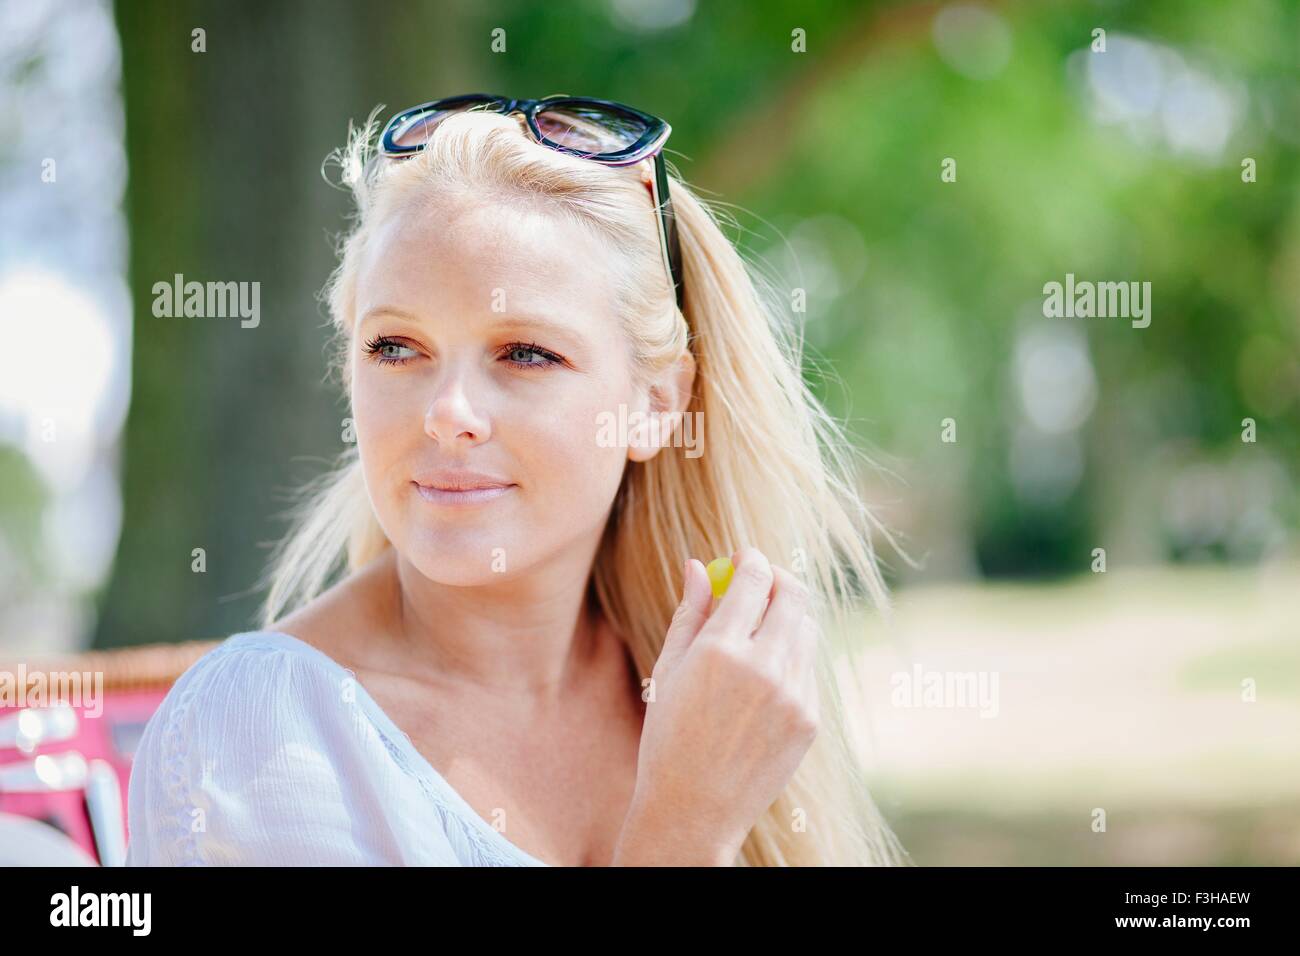 Ritratto di capelli lunghi giovane donna bionda con occhiali da sole sulla testa guardando lontano sorridente Foto Stock